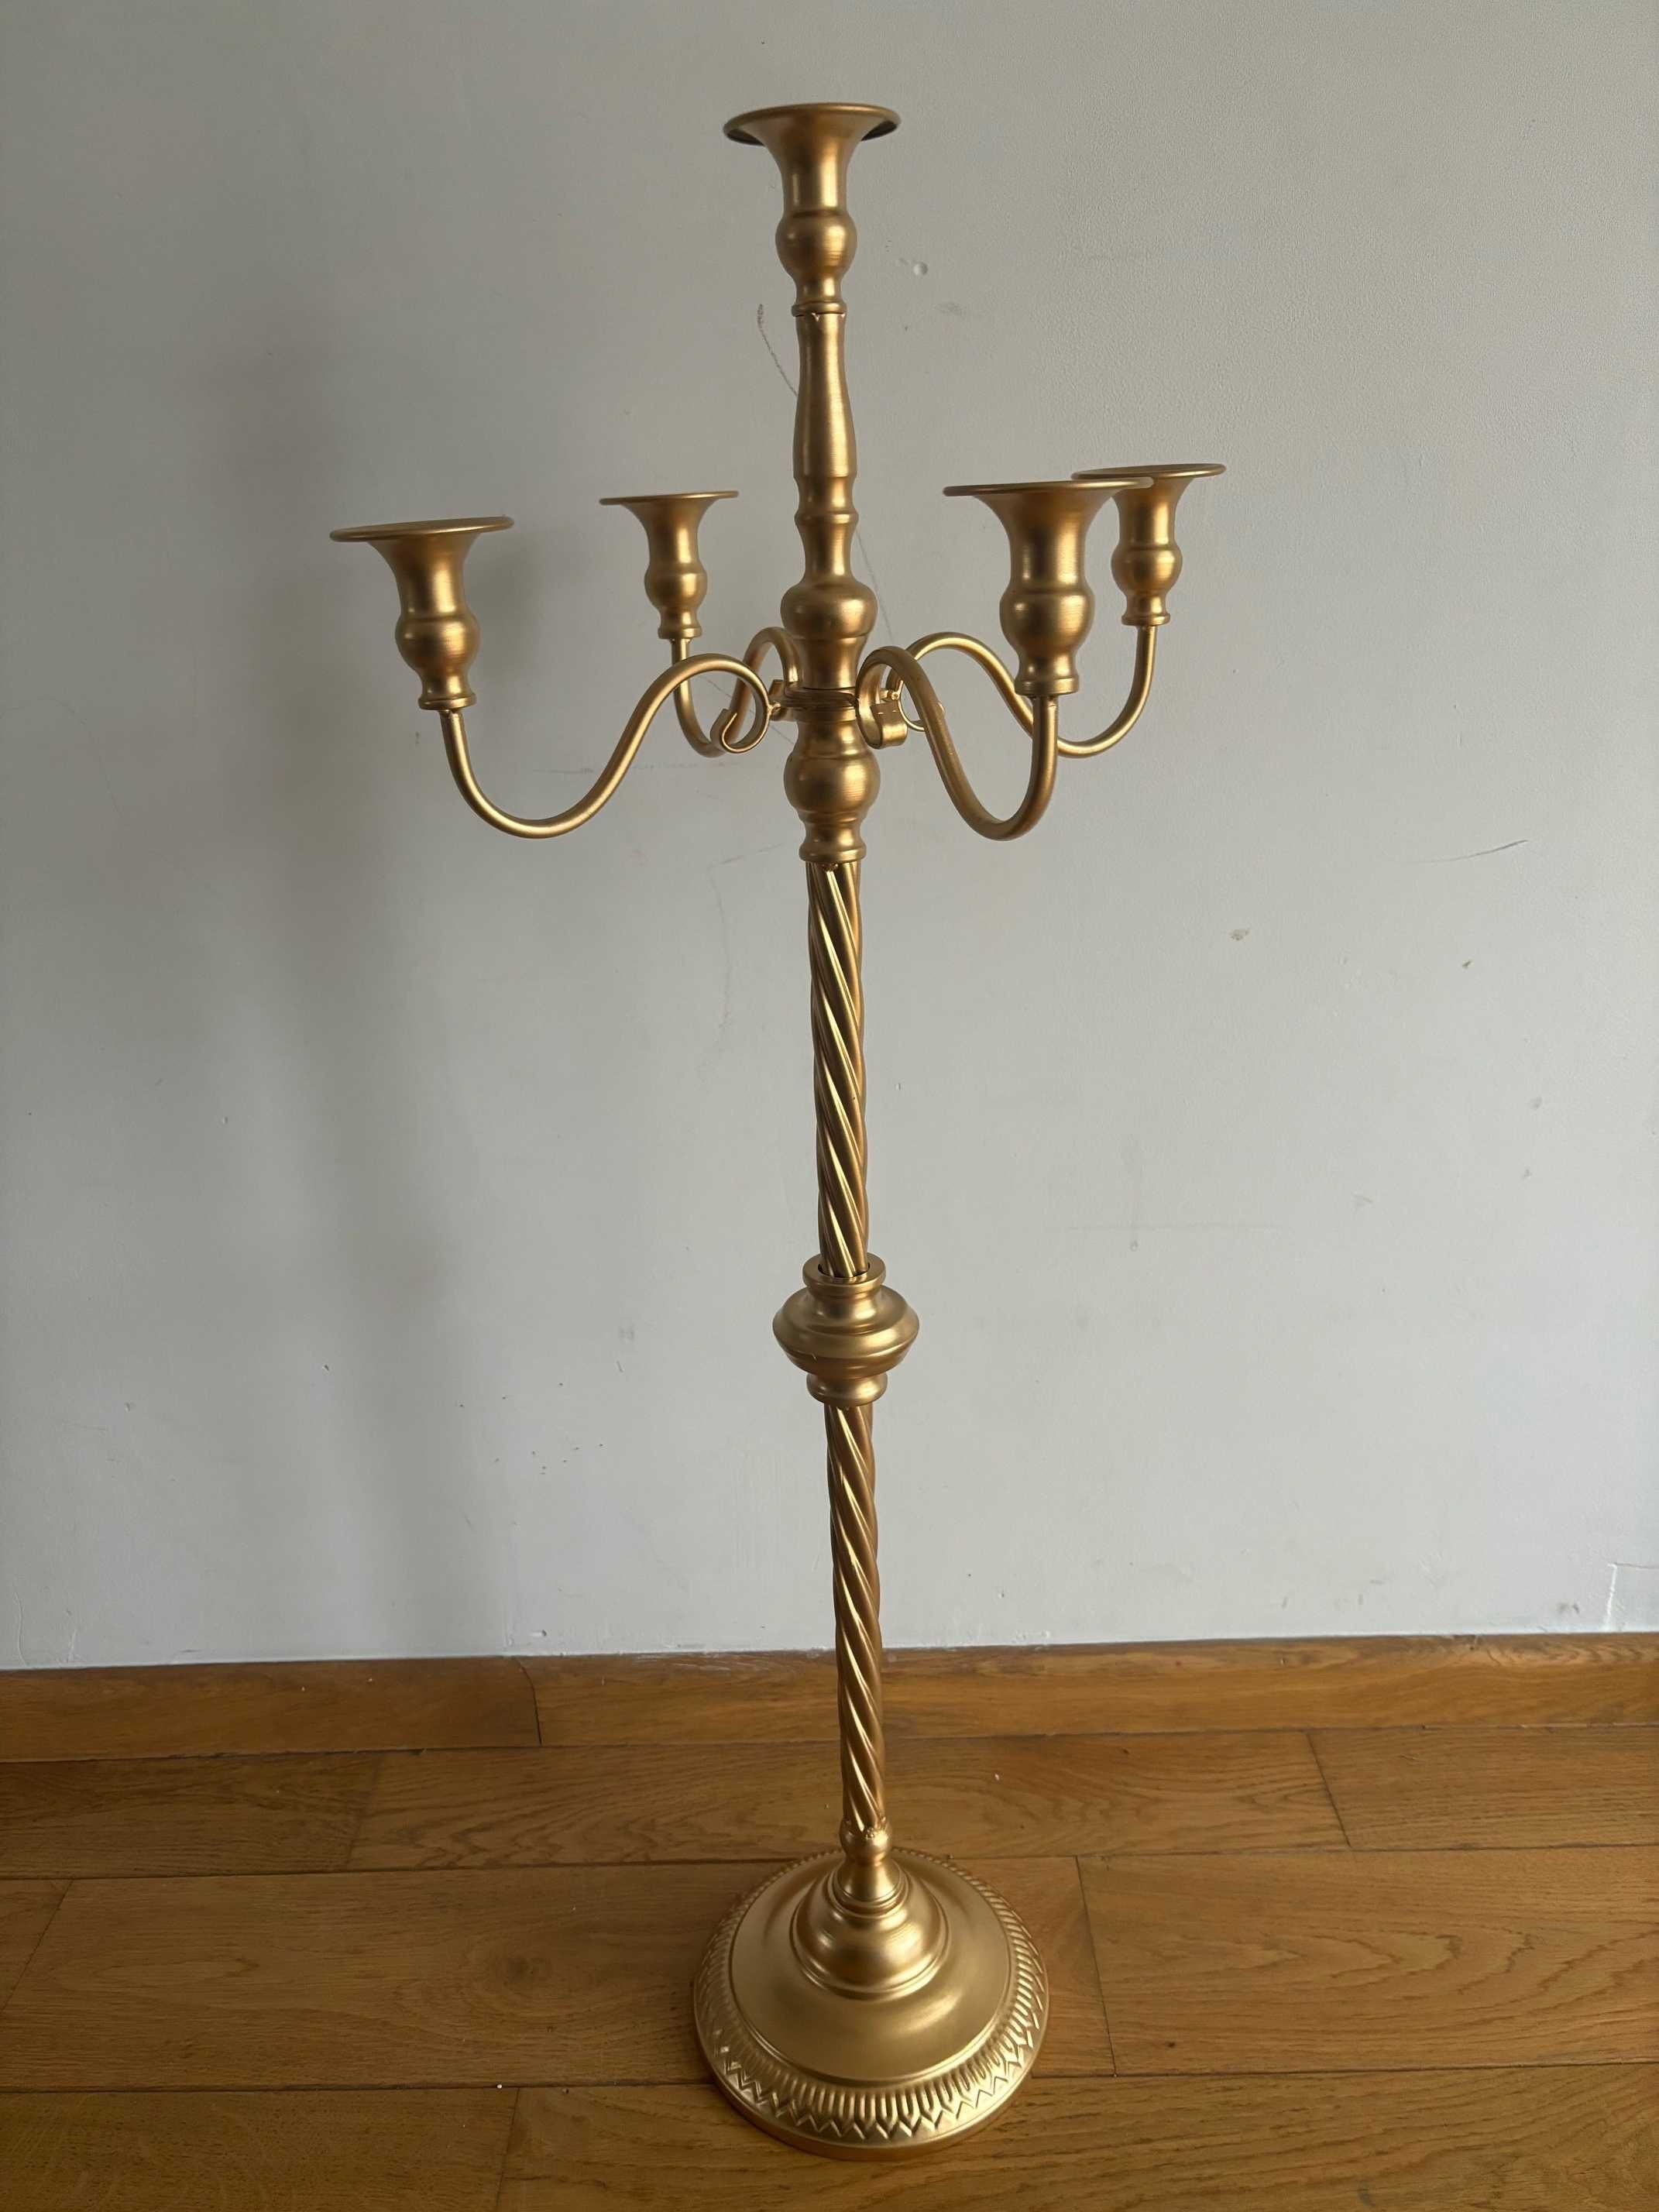 Złoty metalowy świecznik 88cm wys. Sziqiqi 5 ramienny